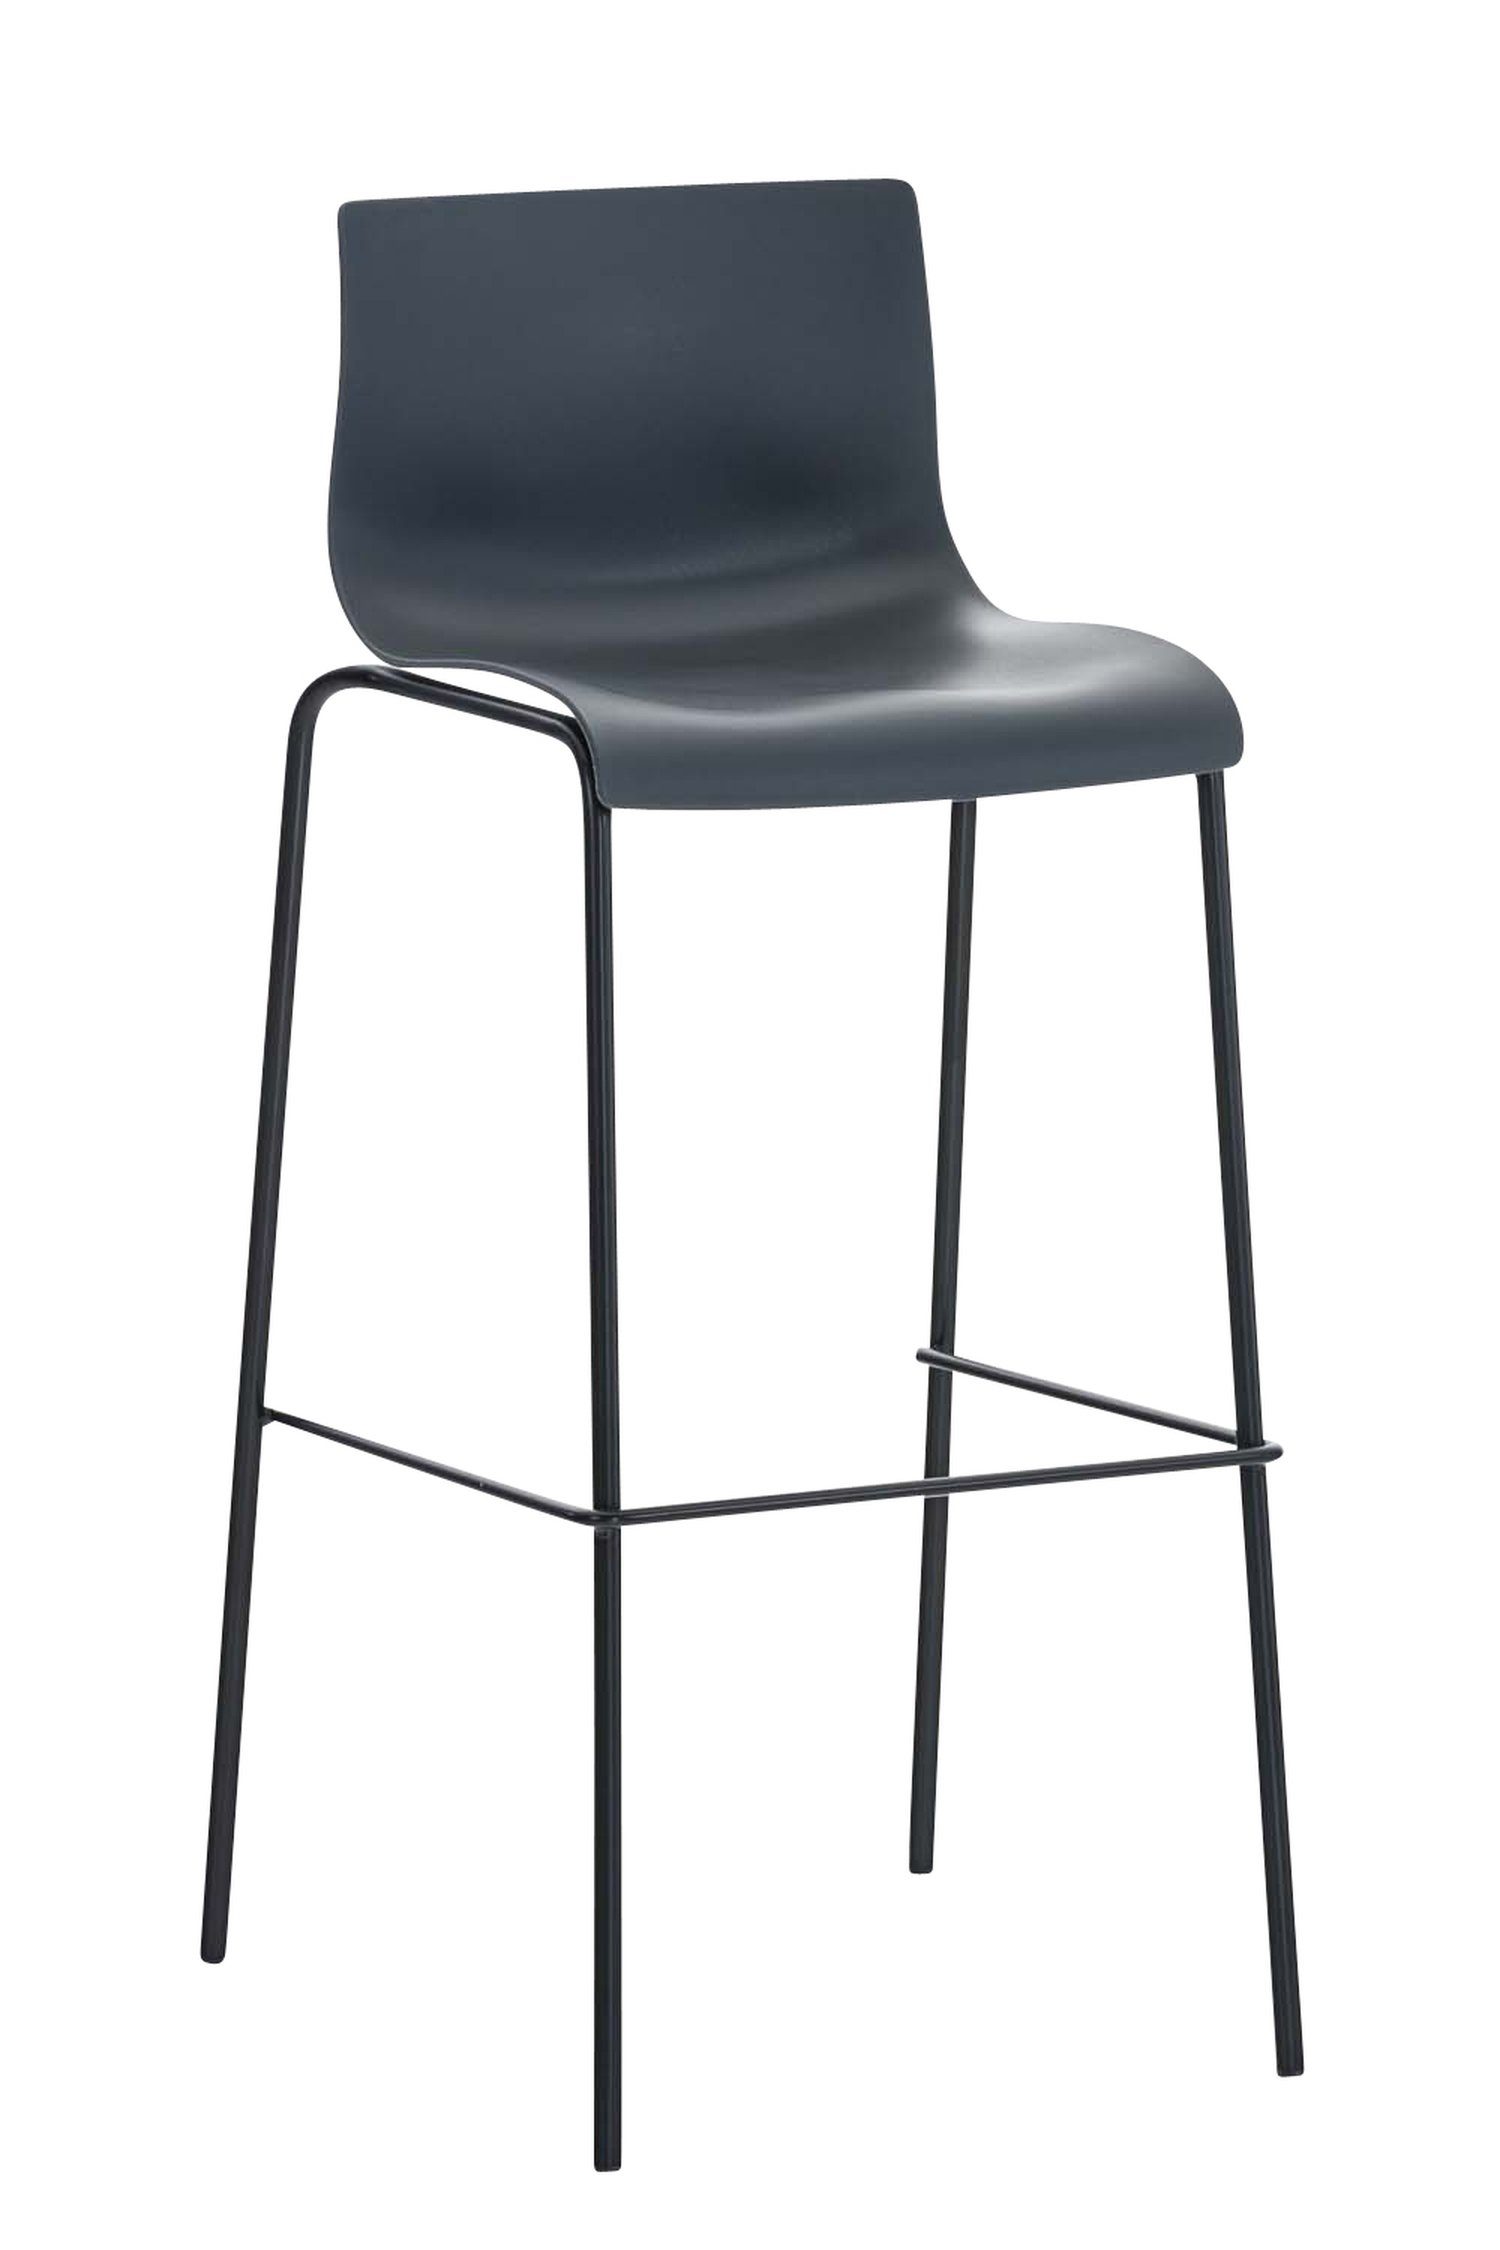 TPFLiving Barhocker Hoover (mit Fußstütze - Hocker für Theke & Küche - Tresenhocker), Gestell Metall schwarz - Sitzfläche: Kunststoff Grau